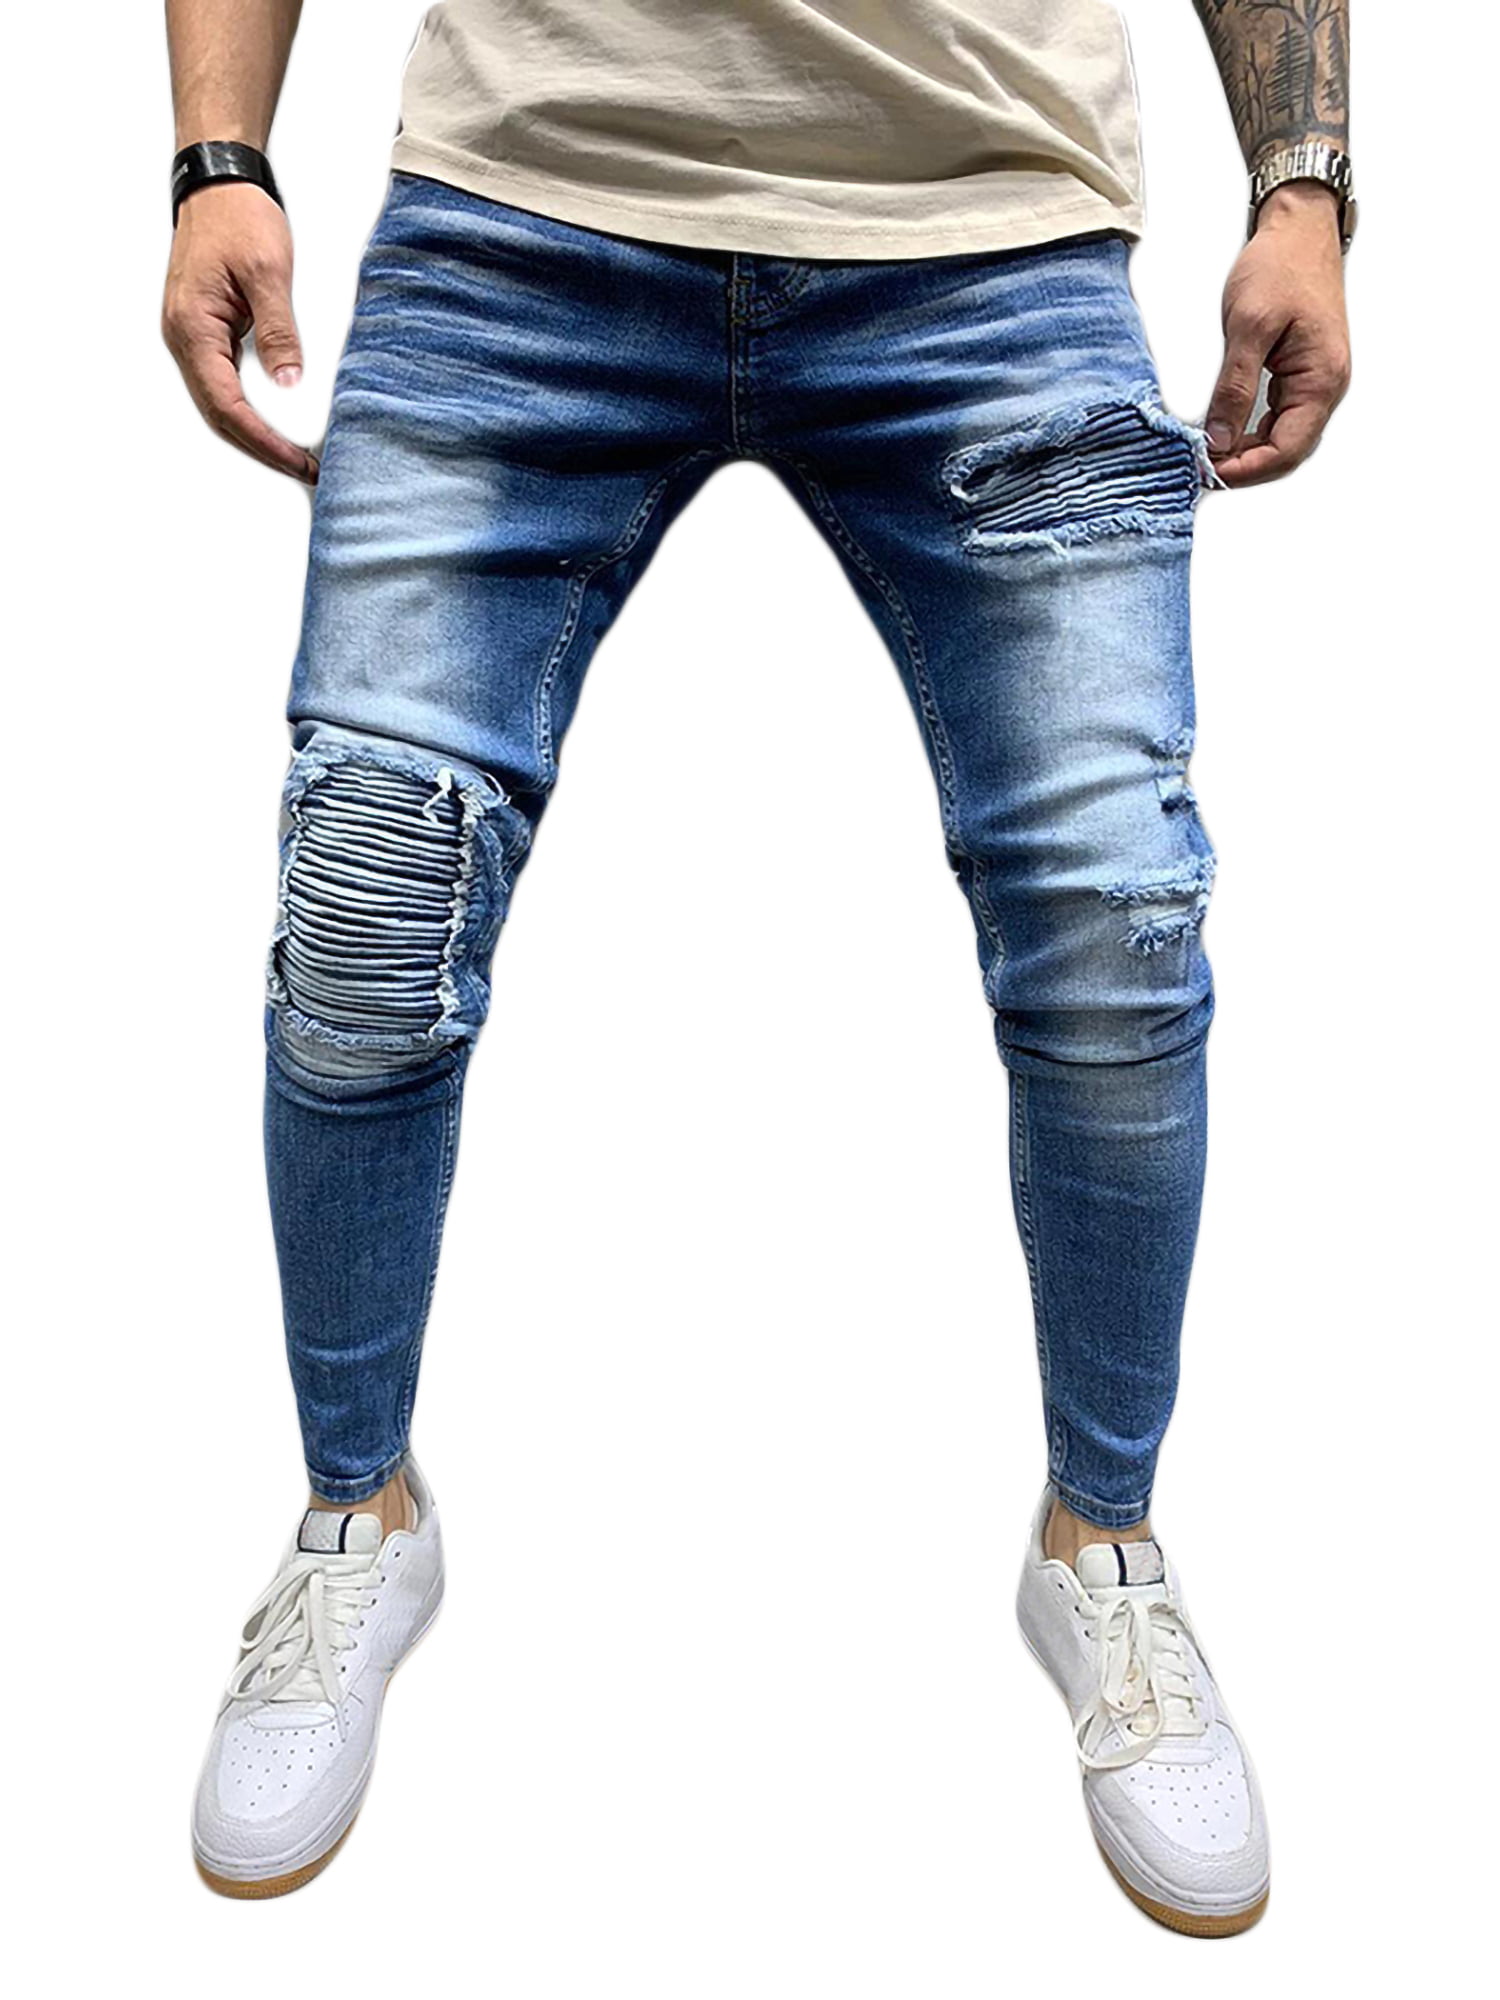 Men's Fashion Ripped Skinny Biker Jeans Destroyed Frayed Slim Fit Denim Pants 